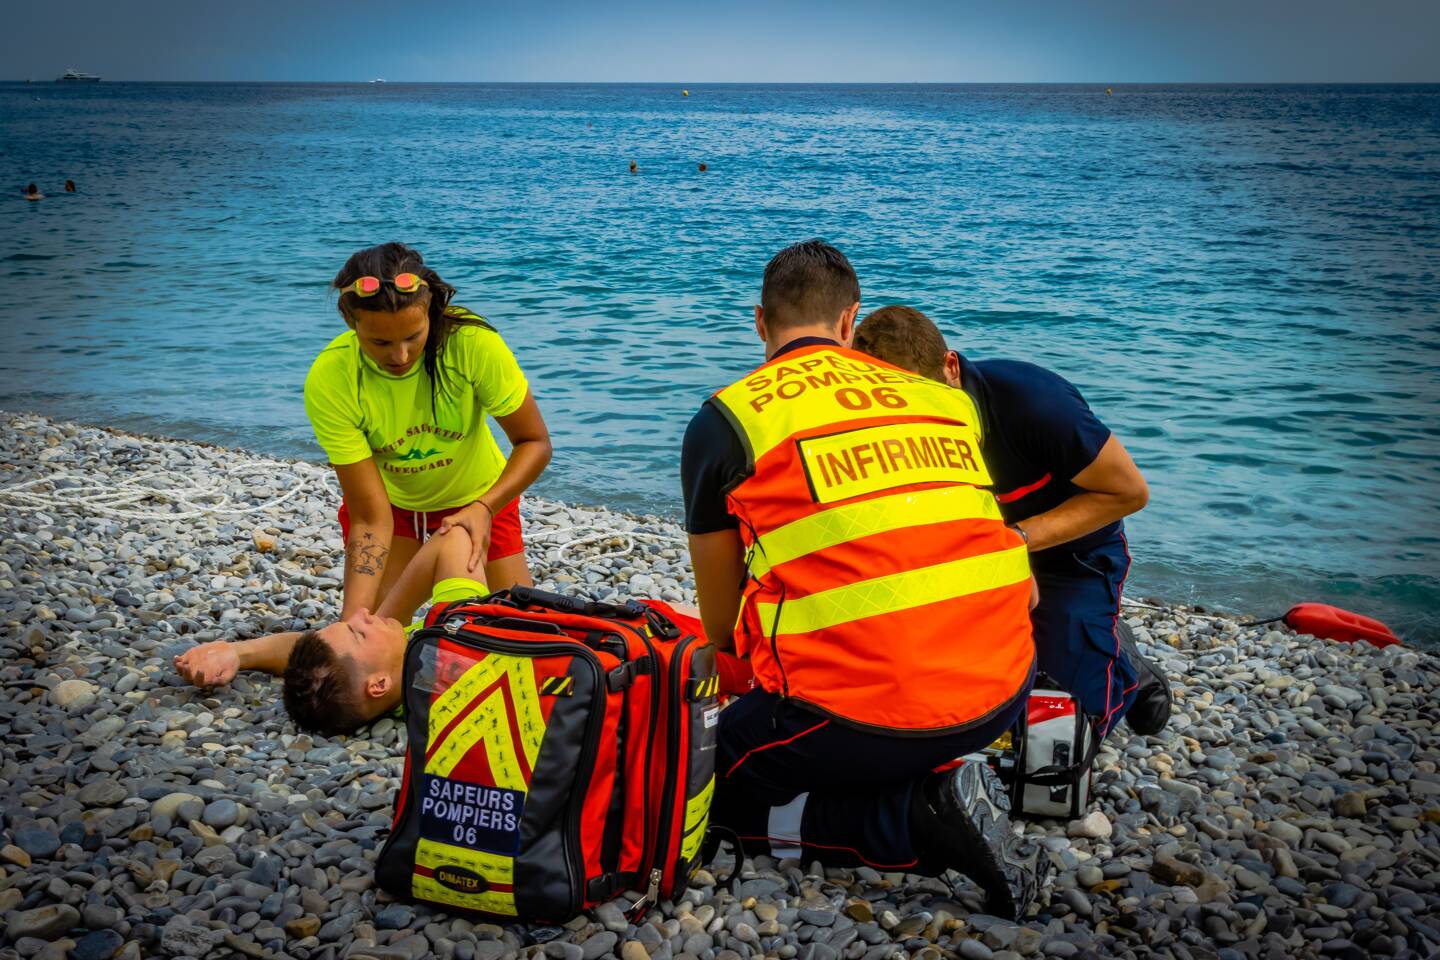 Les nageurs-sauveteurs de Sdis 06 lors d’une démonstration de secours, la semaine dernière à Nice. (Photo Sdis 06)